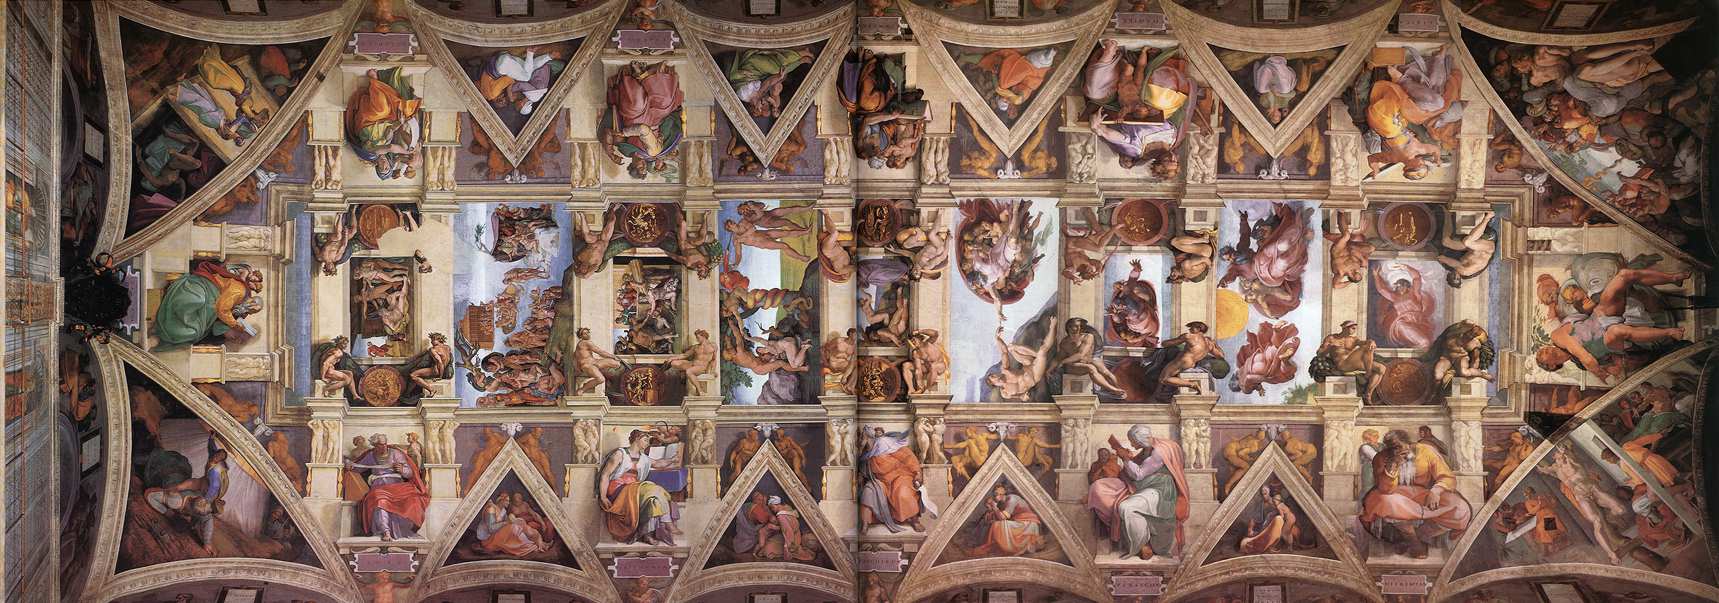 Сикстинская капелла в Ватикане. Описание фресок Микеланджело